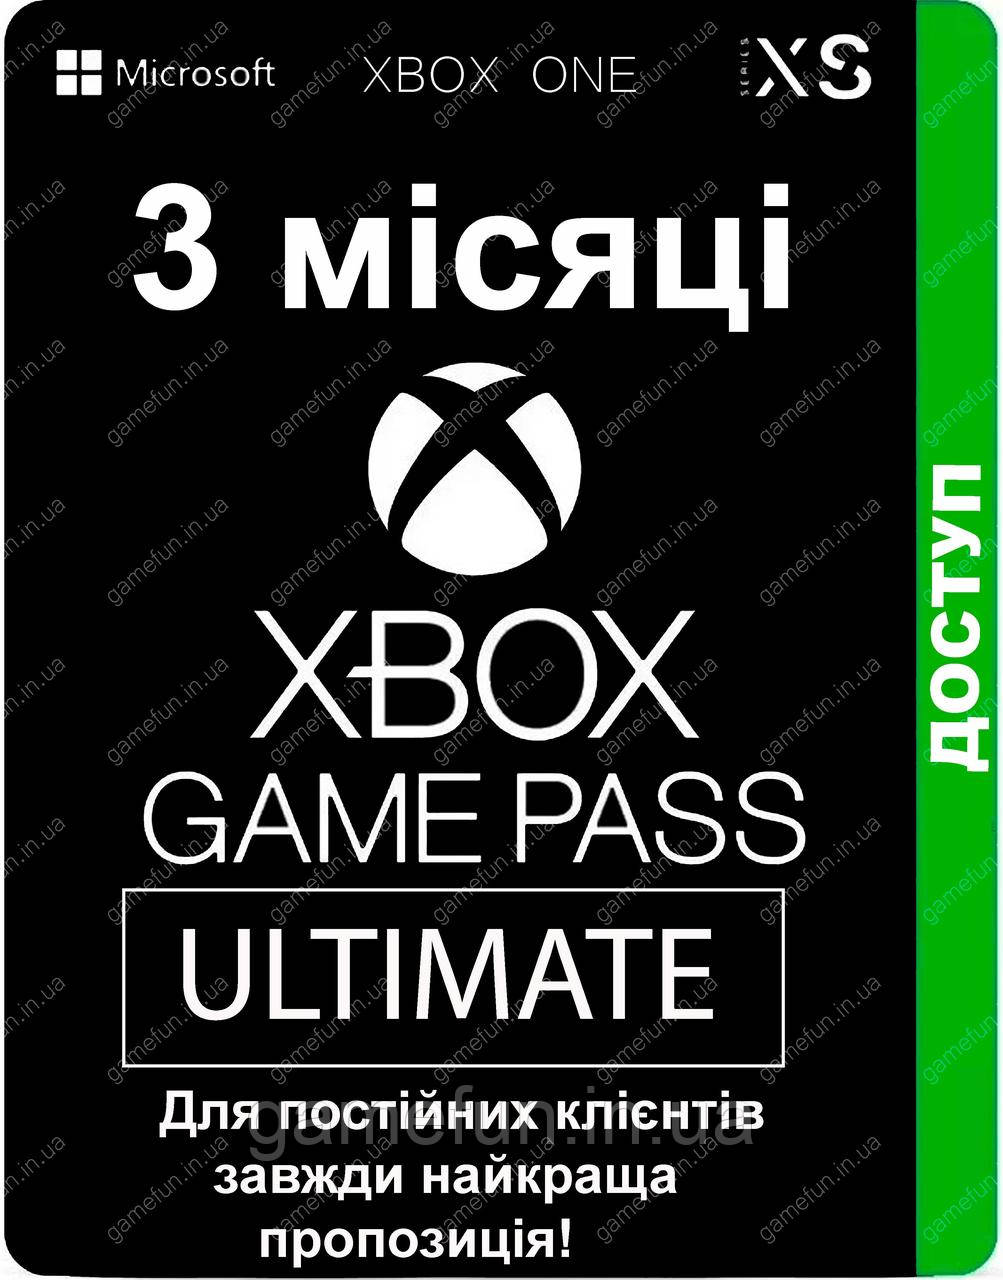 Xbox Game Pass Ultimate - 3 місяці (для постійних клієнтів) передплата